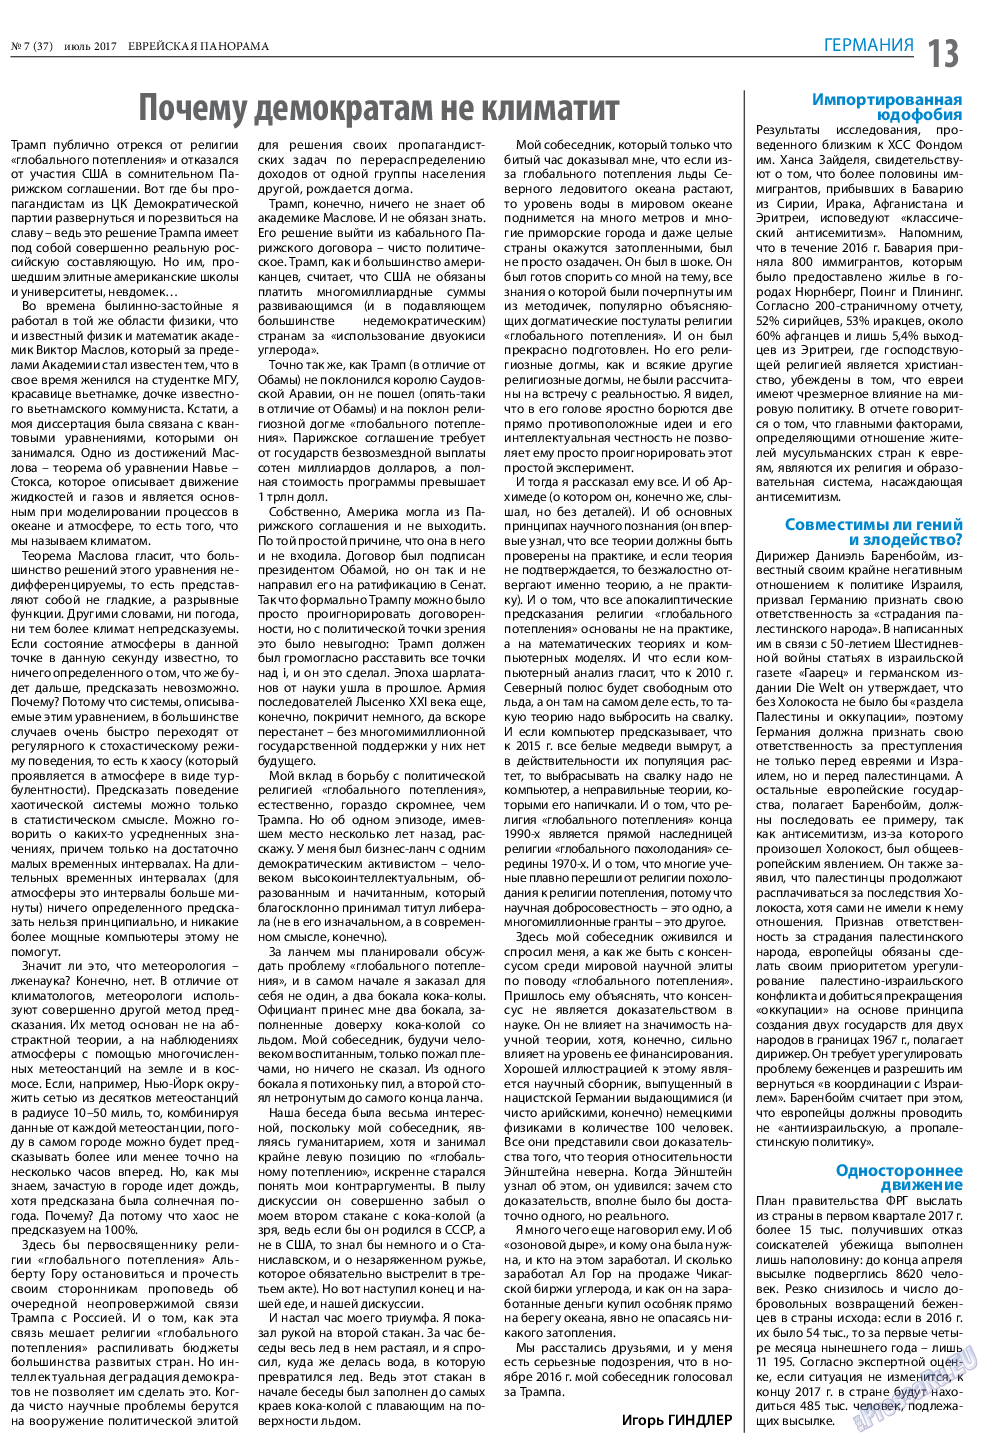 Еврейская панорама (газета). 2017 год, номер 7, стр. 13